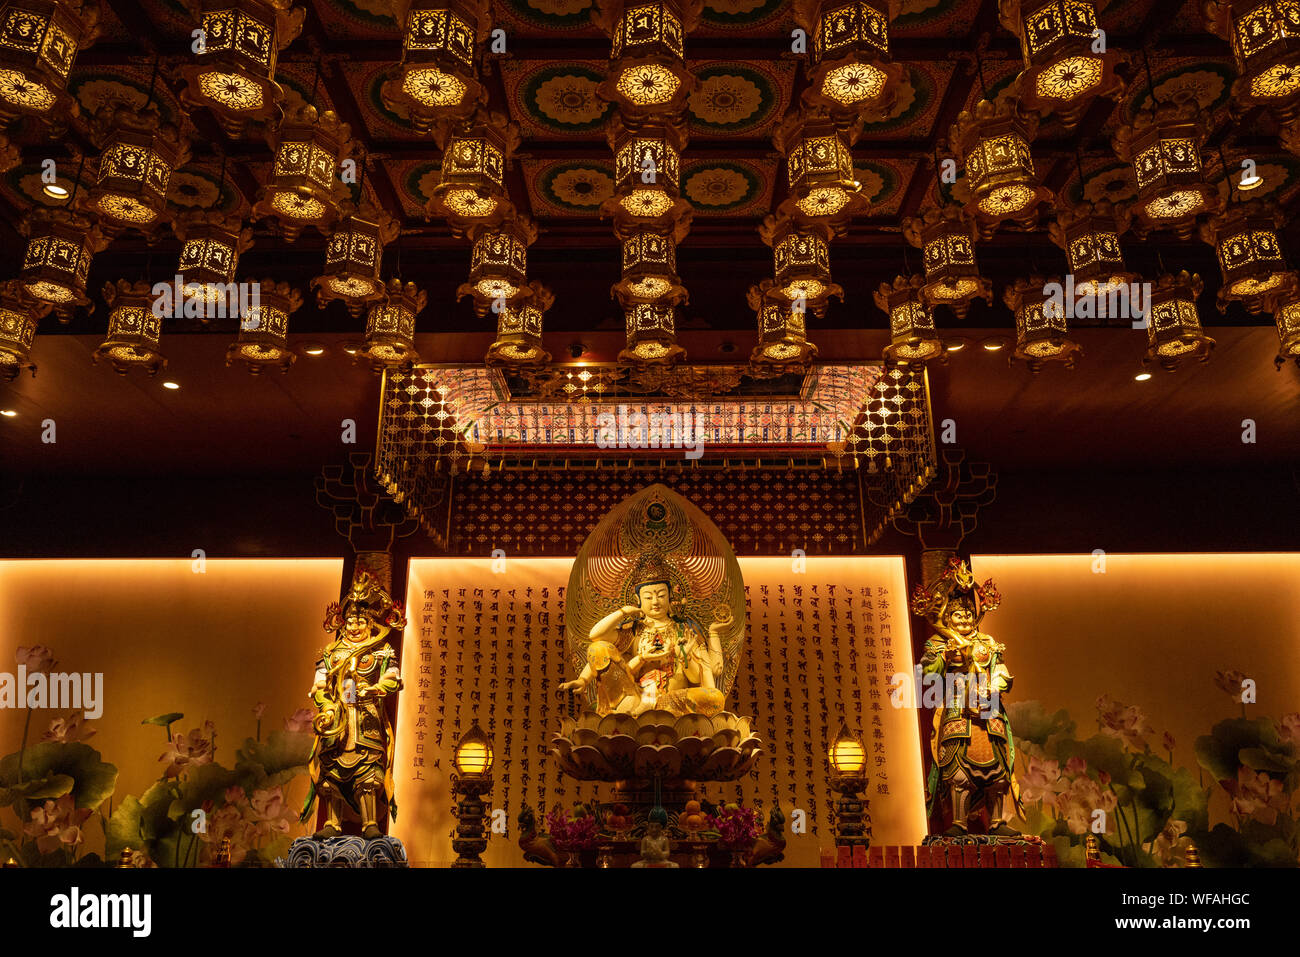 Il Tempio Del Dente di Buddha a Chinatown, Singapore è una popolare attrazione turistica e un importante centro per il Buddismo in citta'. Foto Stock